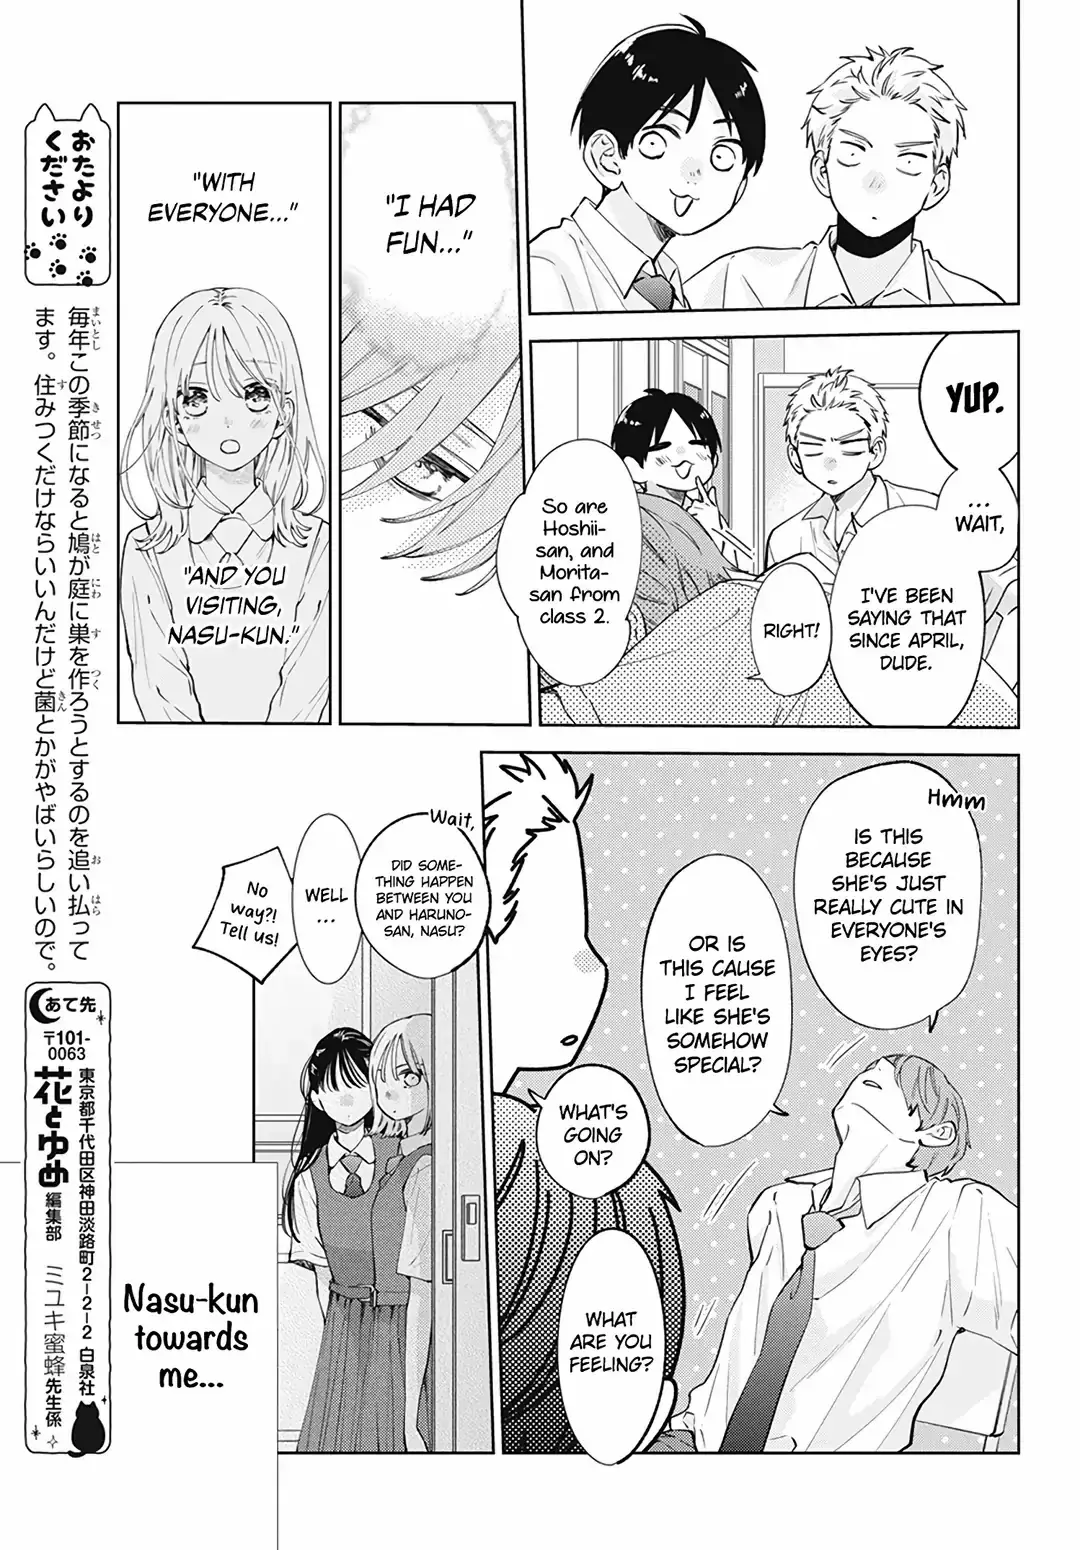 Haru No Arashi To Monster - 15 page 8-707f4fae